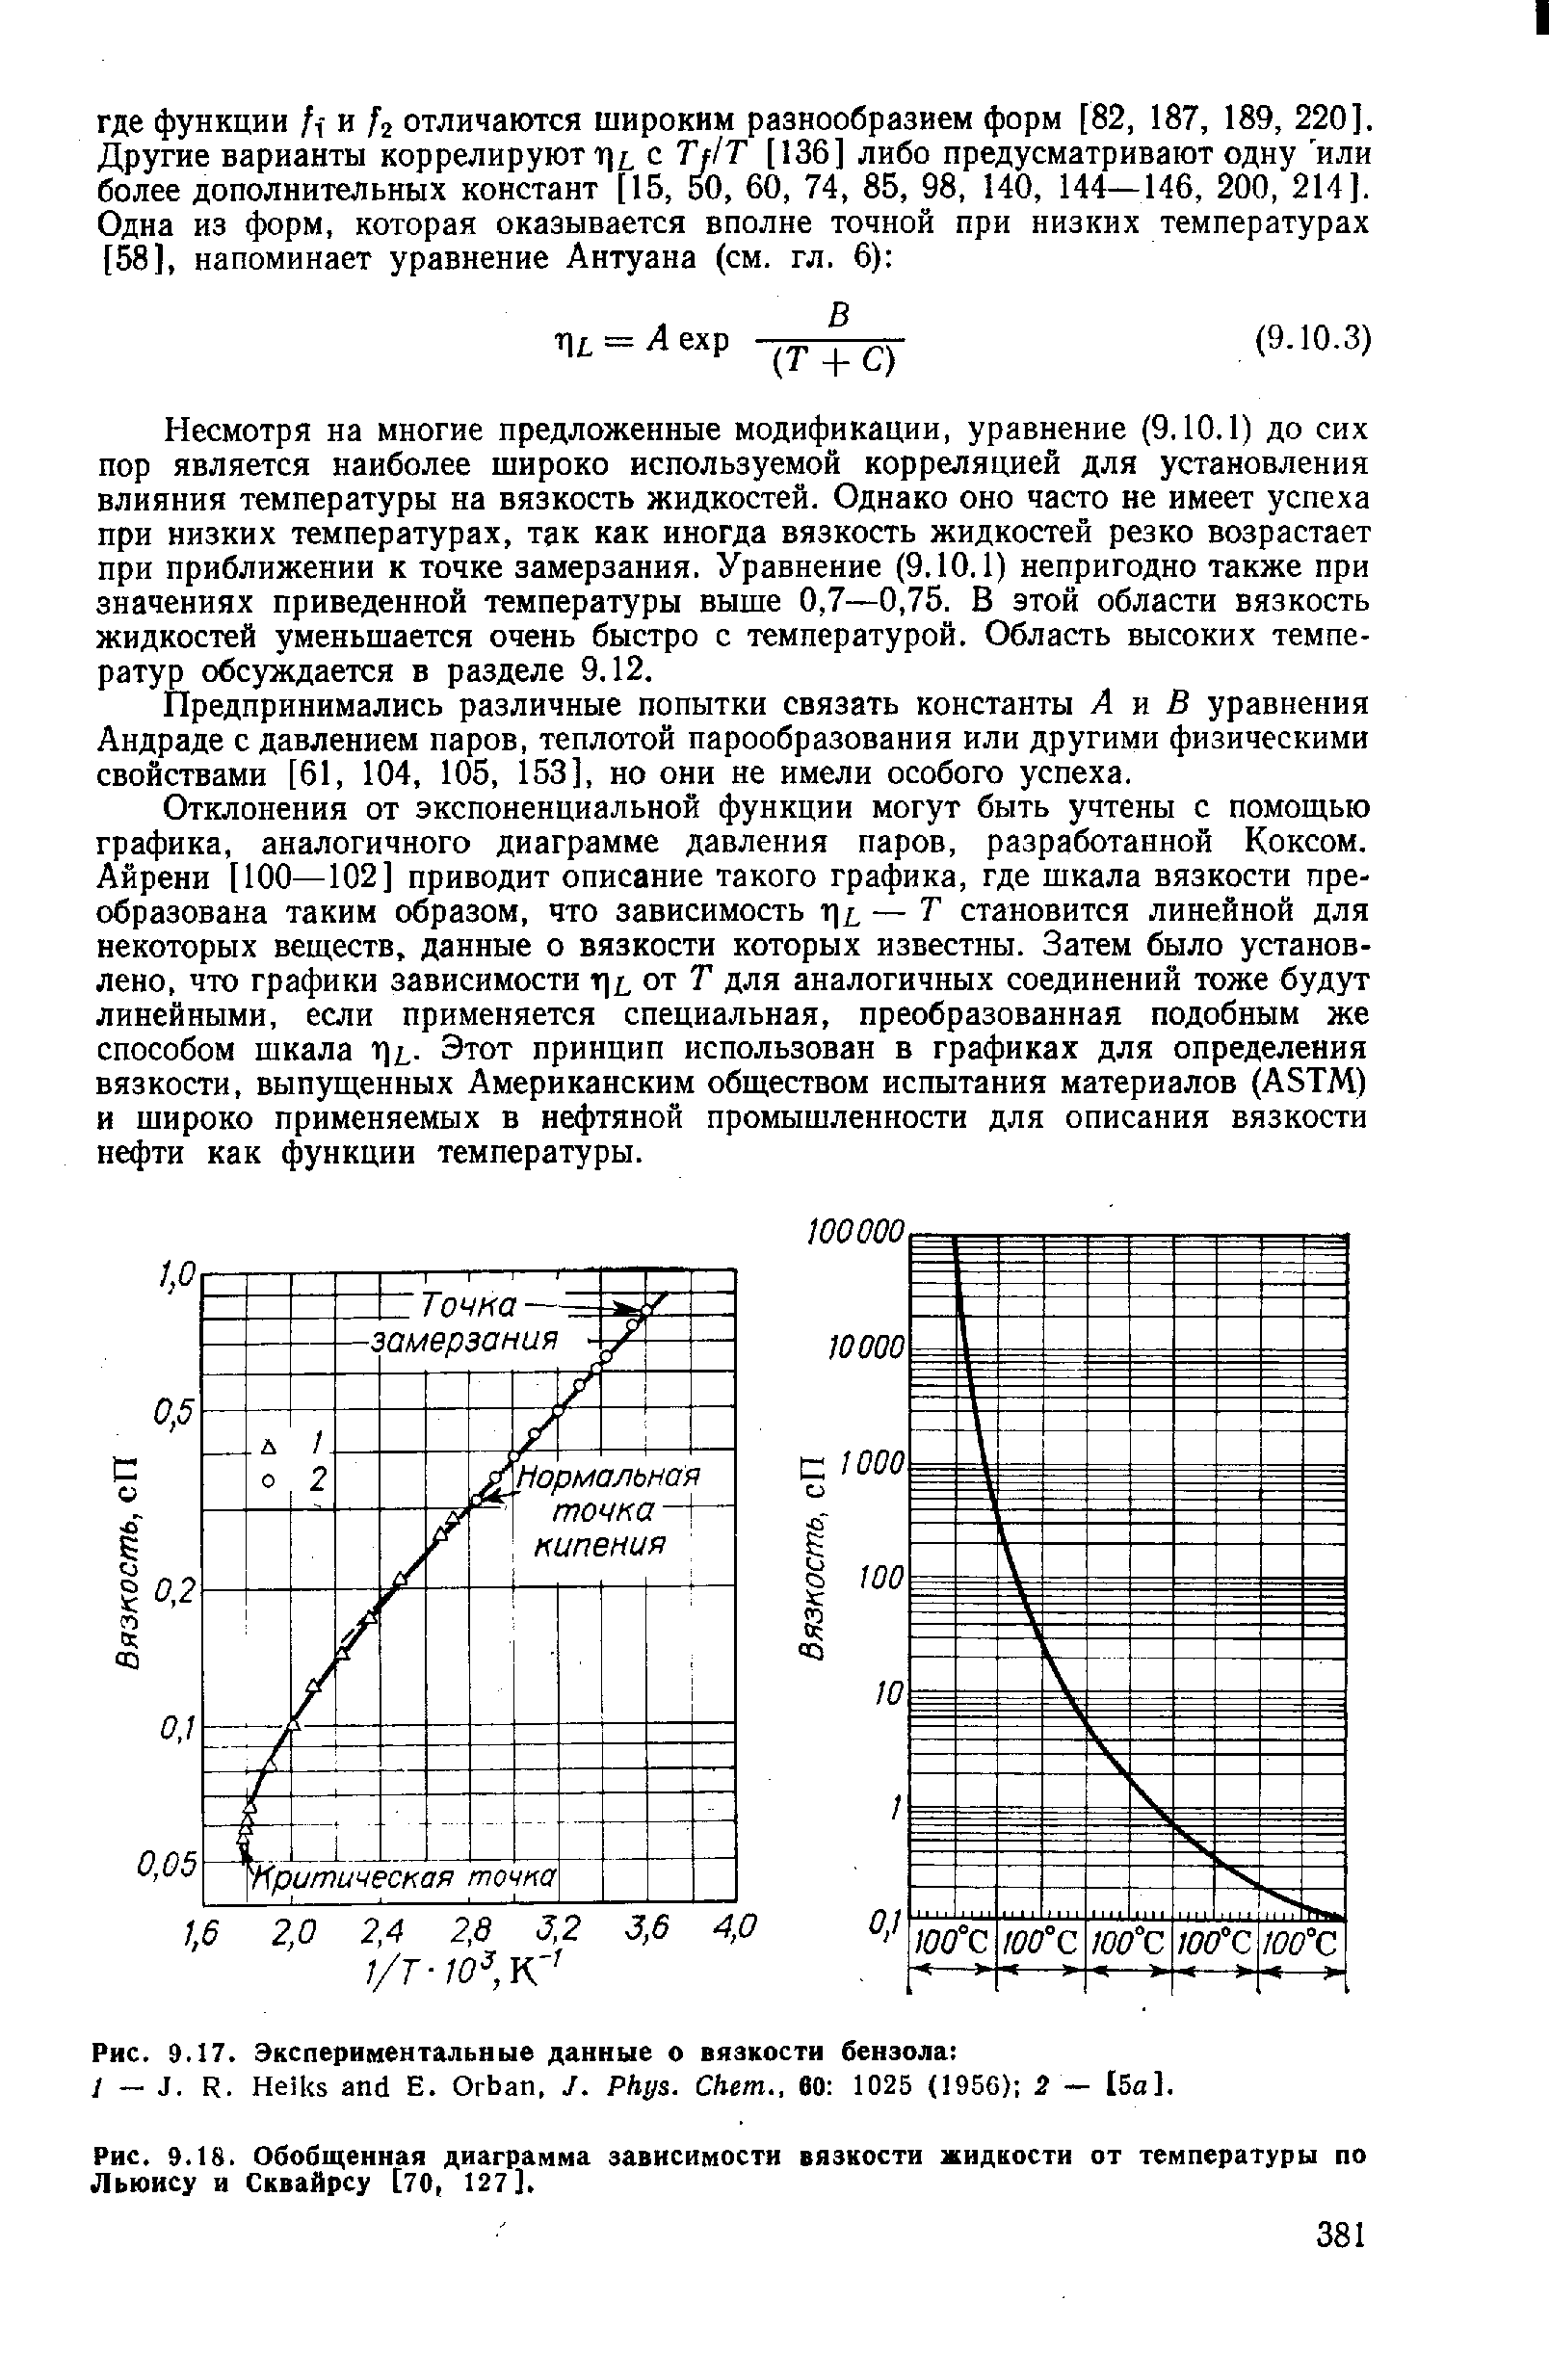 Рис. 9.18. Обобщенная диаграмма зависимости вязкости жидкости от температуры по Льюису и Сквайрсу [70, 127].
